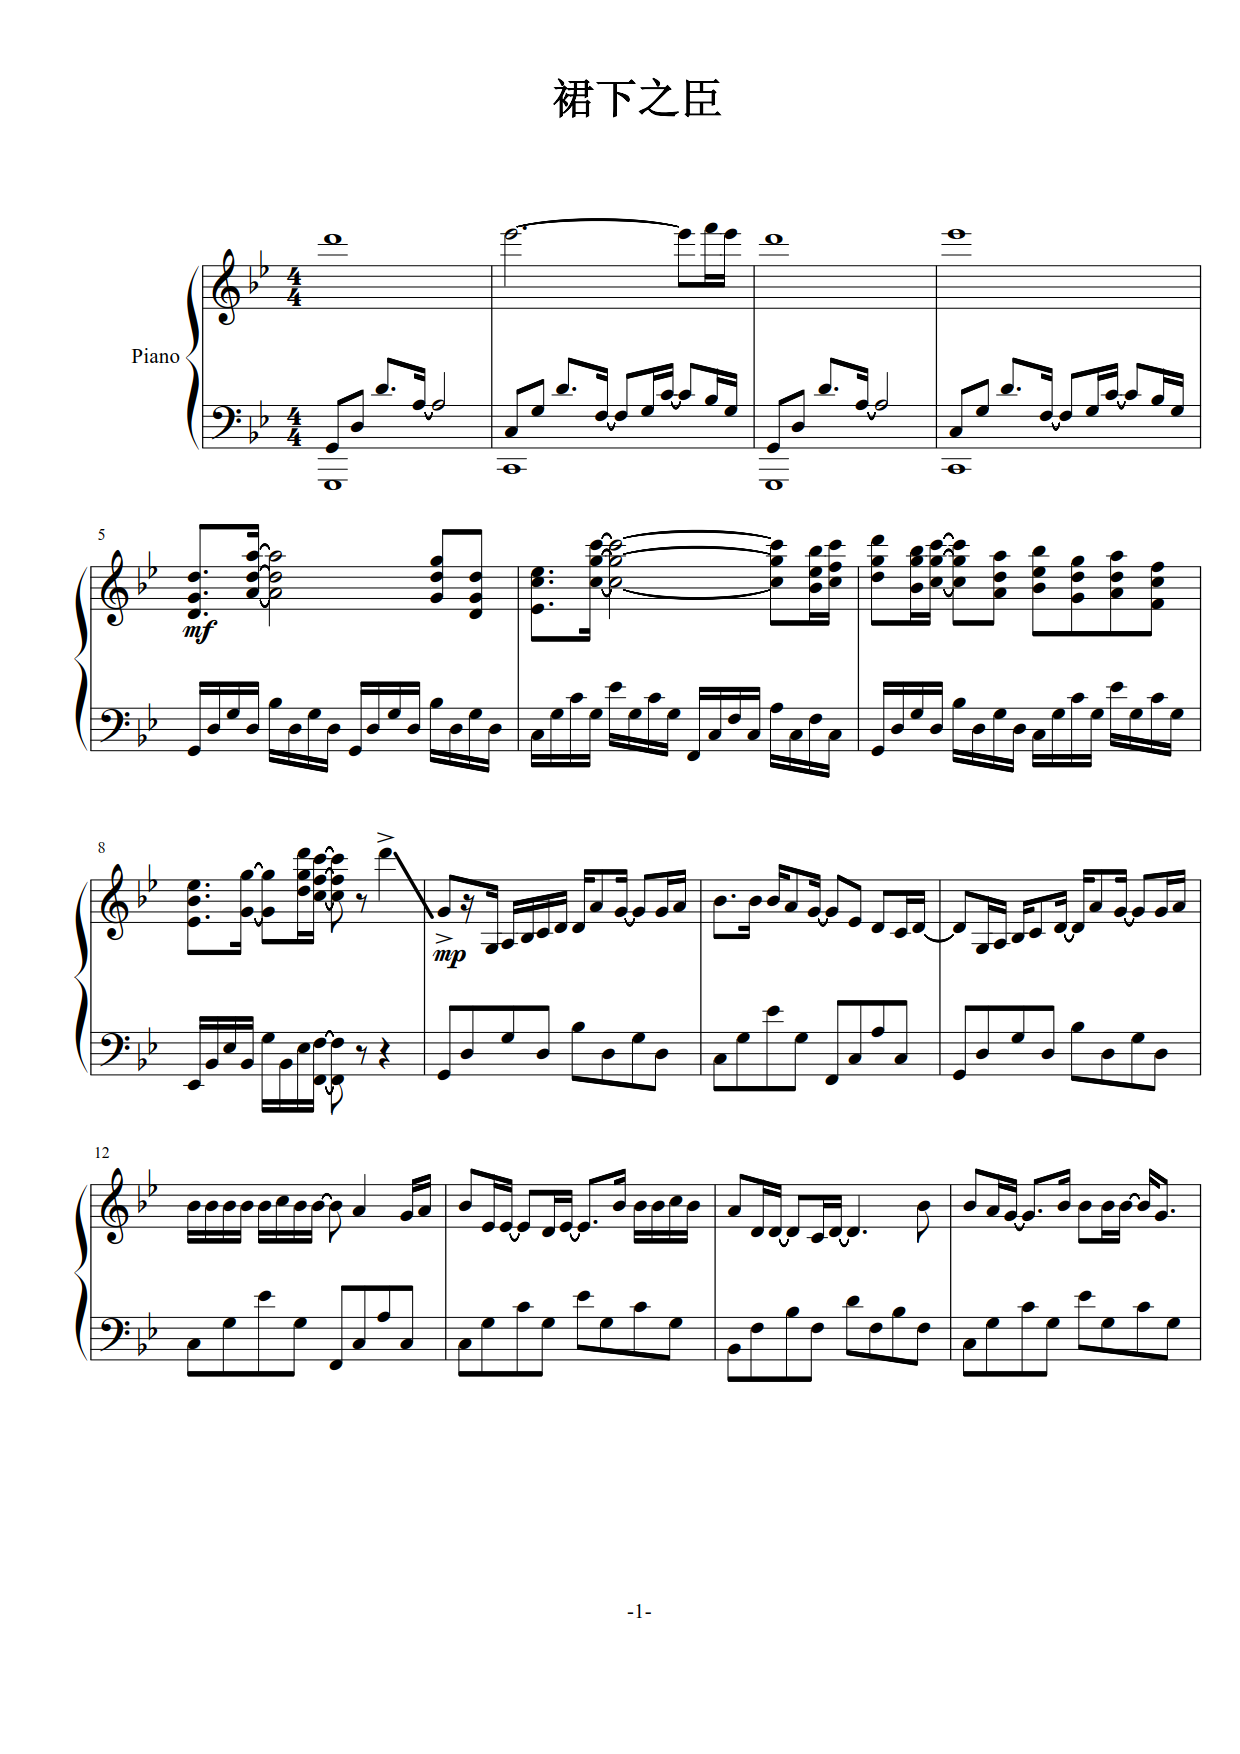 《飞云之下》简单钢琴谱 - 韩红左手右手慢速版 - 简易入门版 - 钢琴简谱